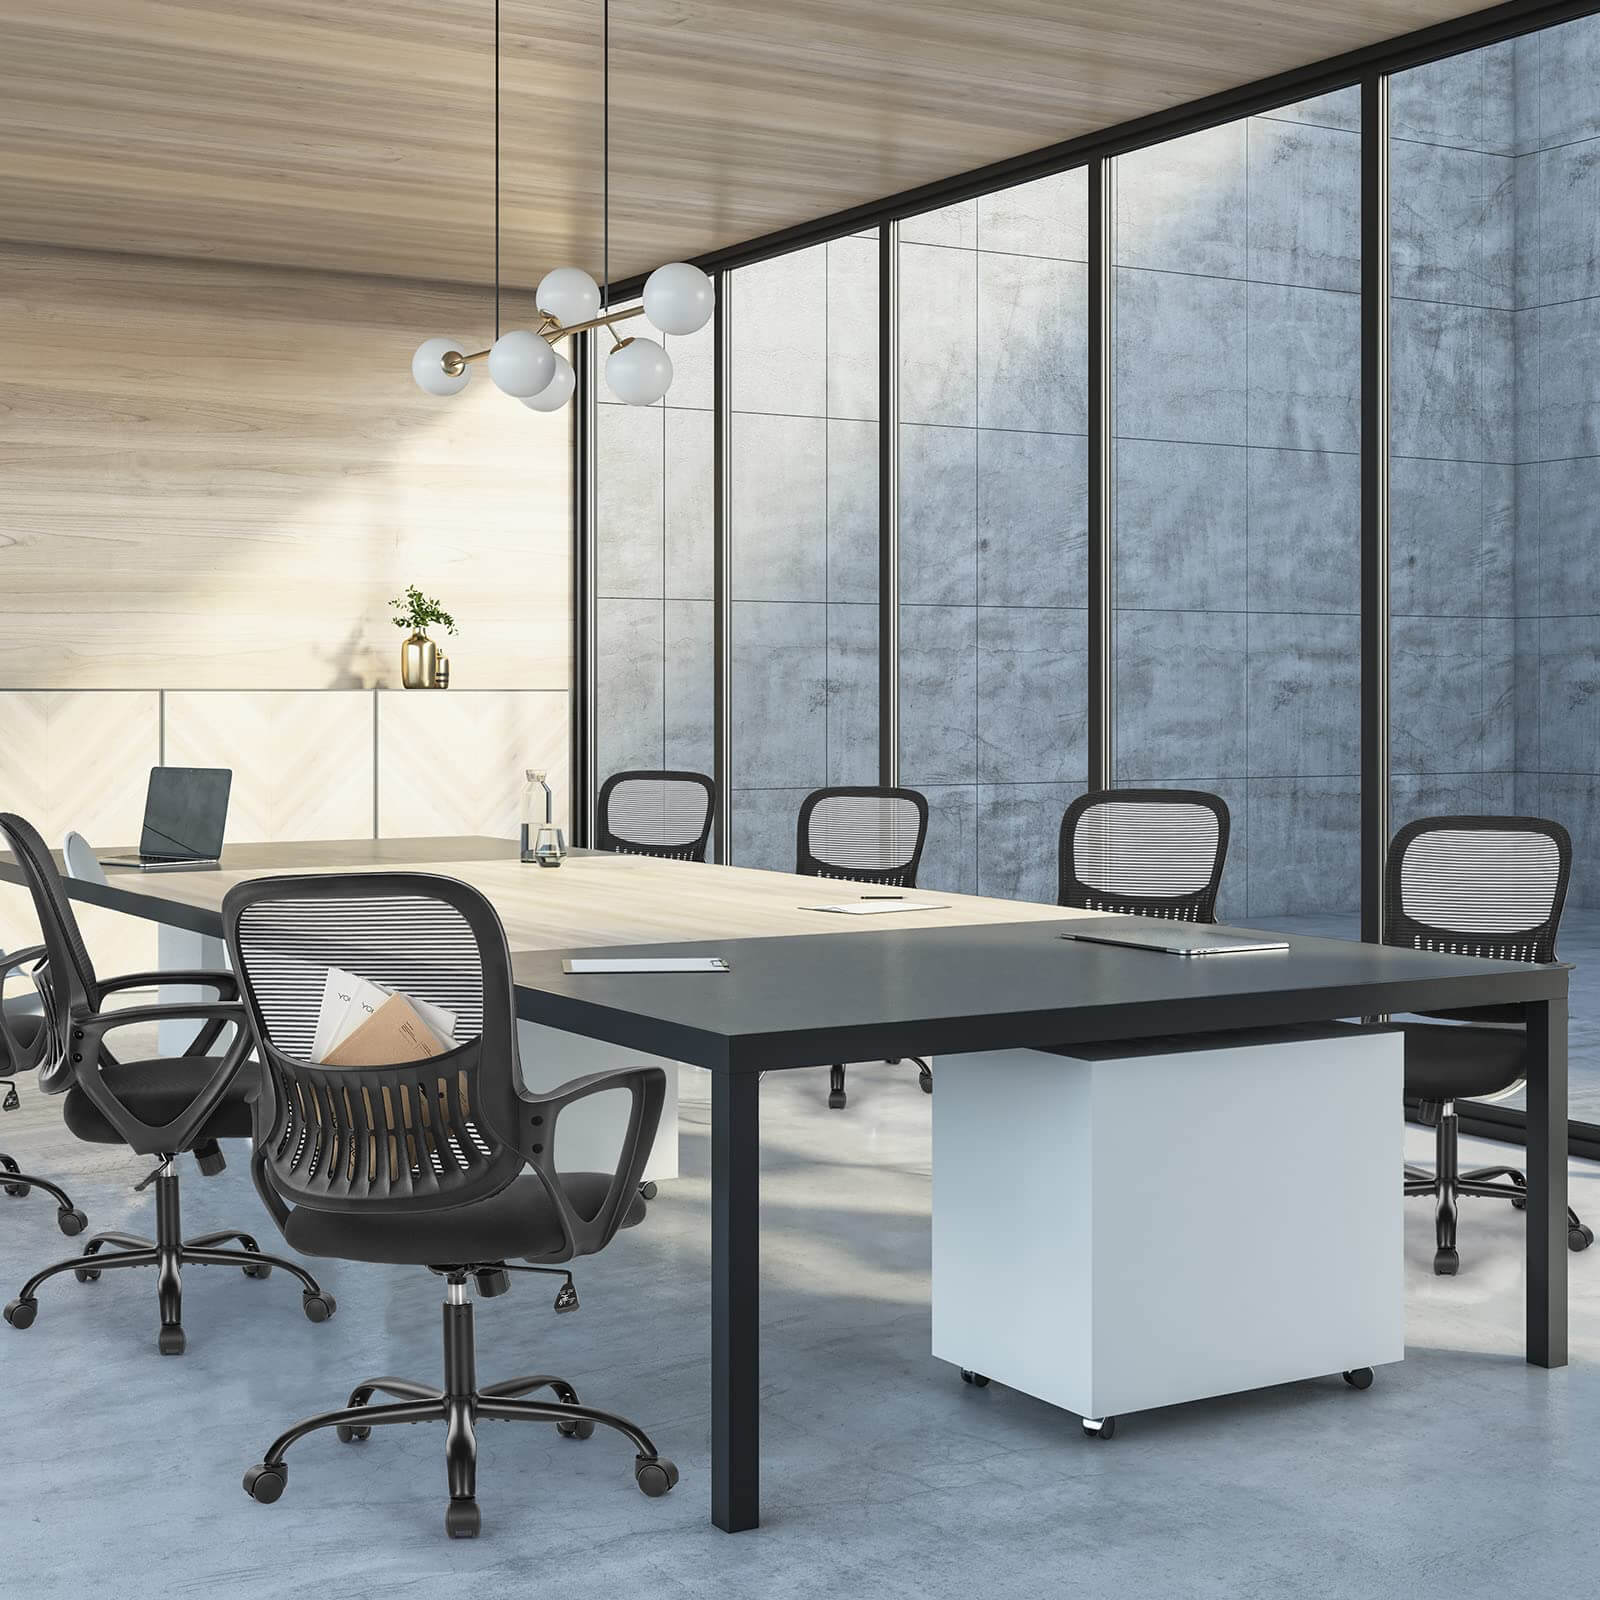 office-chair-ergonomic#Quantity_2 Chair#Color_Black